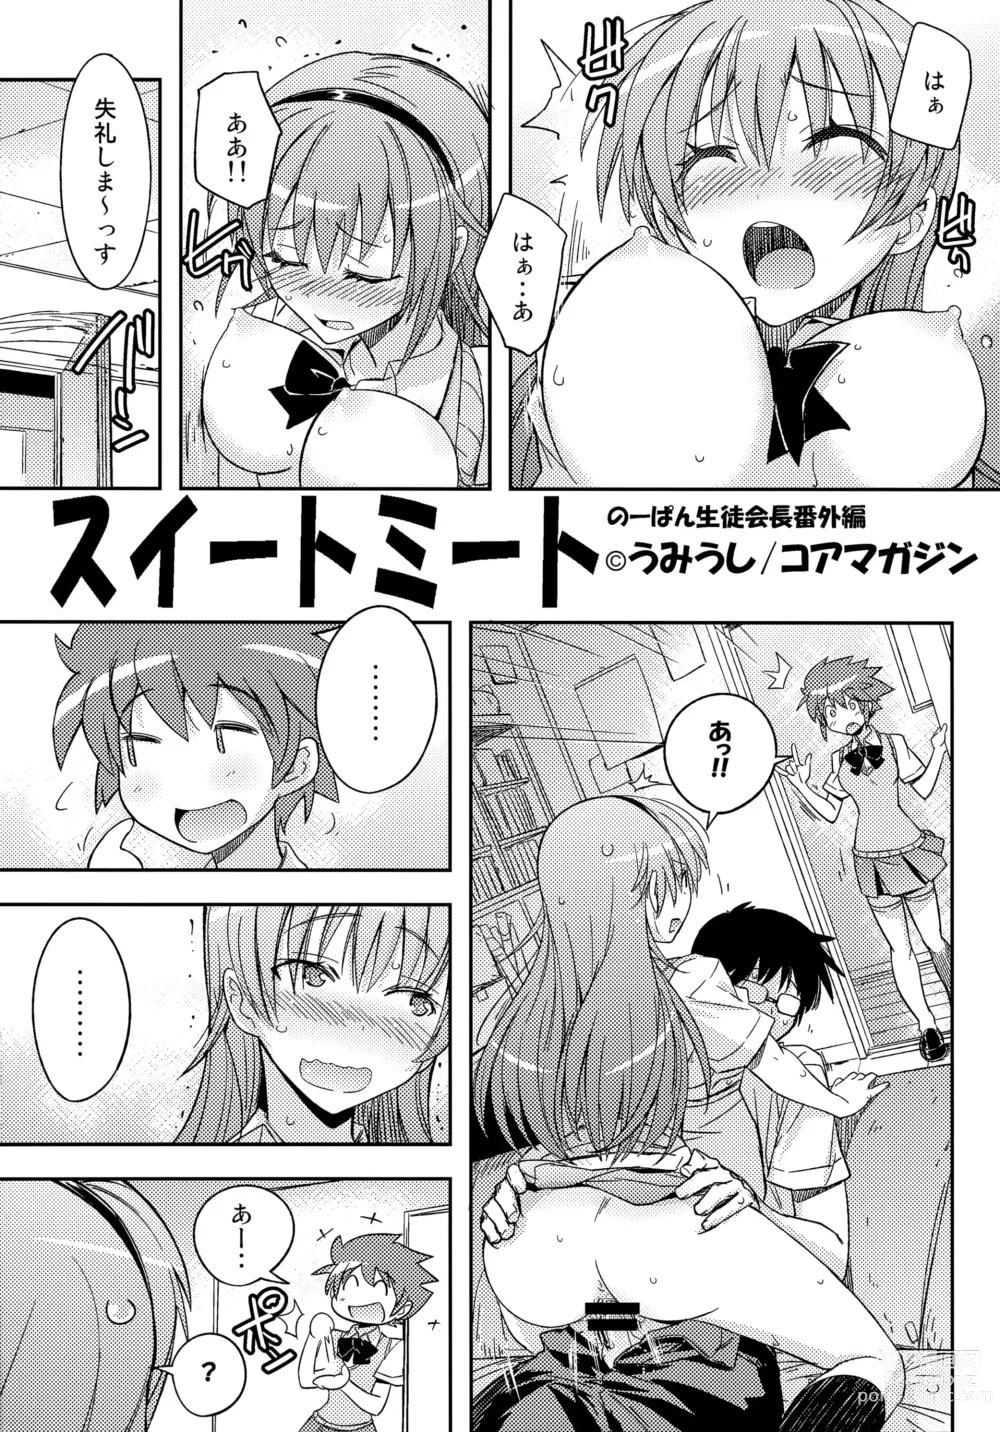 Page 1 of manga Sweet Meet Toranoana 4P Leaflet No-Pan Seitokaichou Bangaihen